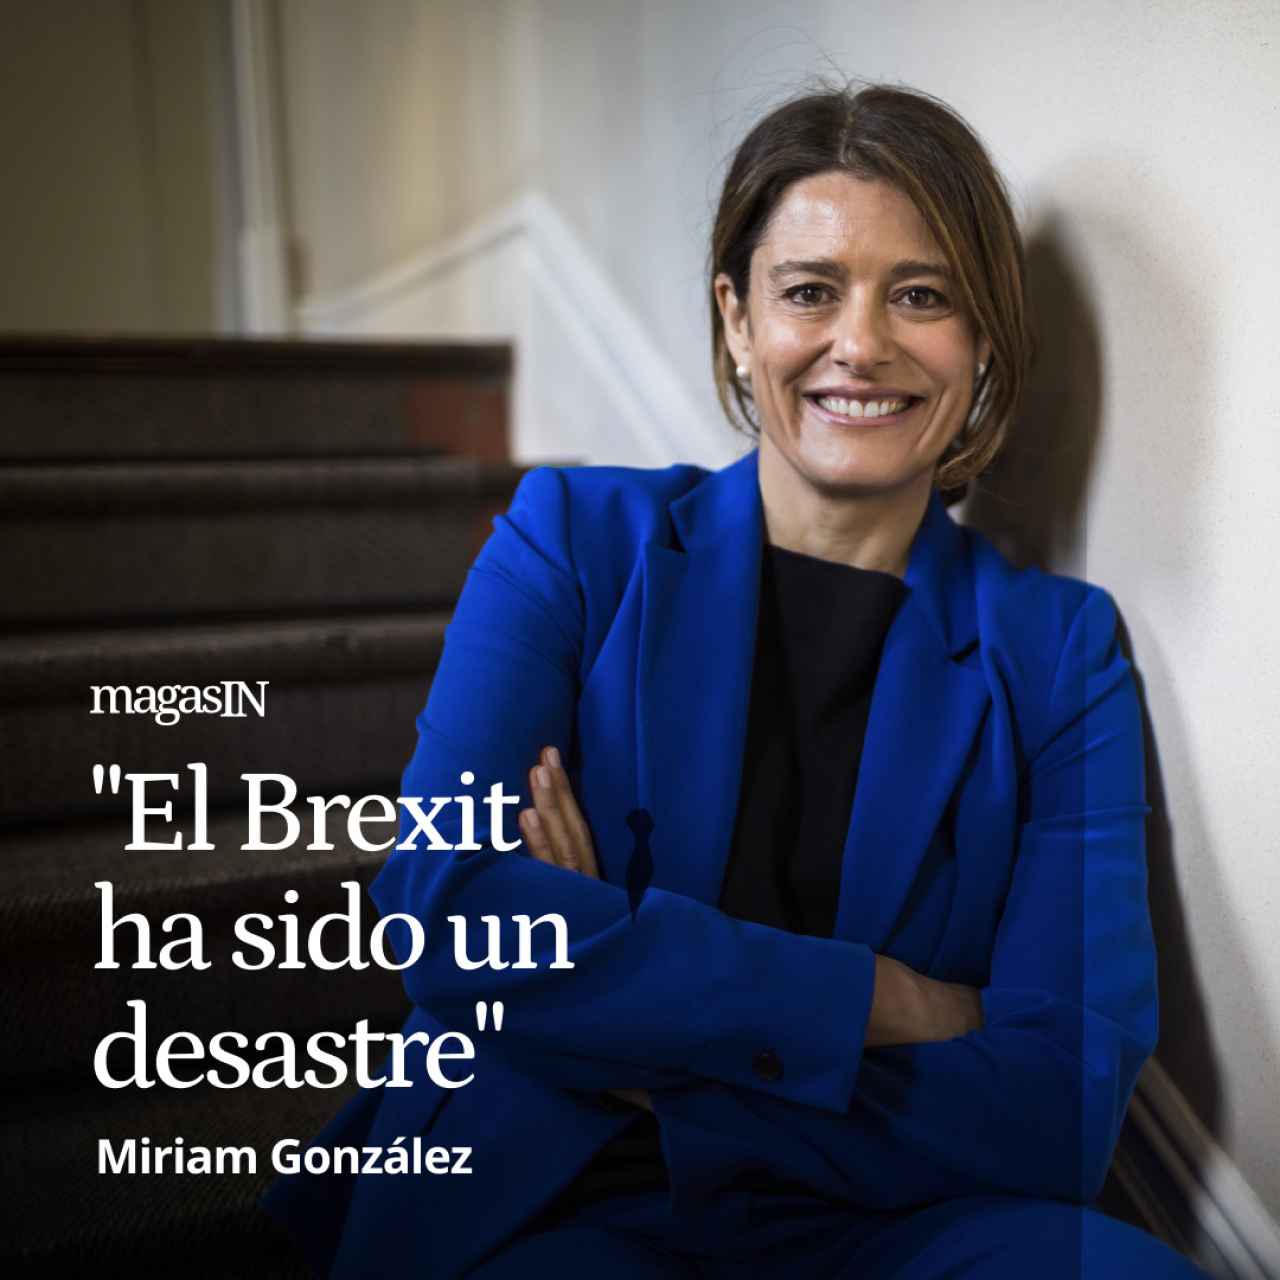 Miriam González vuelve a Europa con Nick Clegg y hace balance: "El Brexit ha sido un desastre"